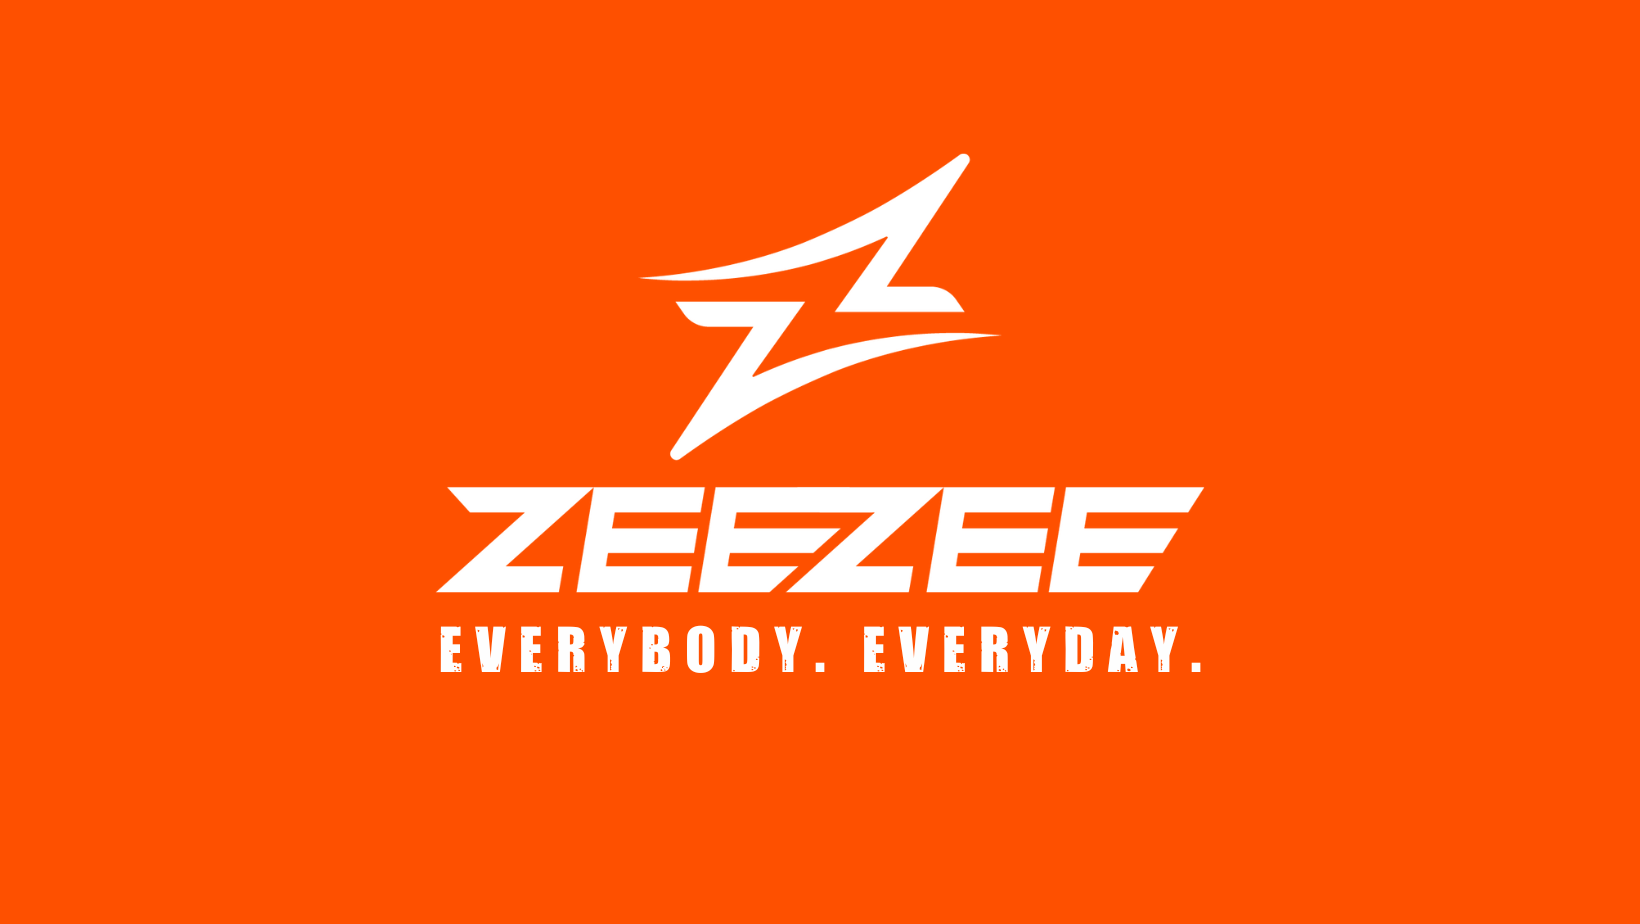 ZEEZEE Eye Wear Logo - Orange box which includes the text Everybody, Everyday 